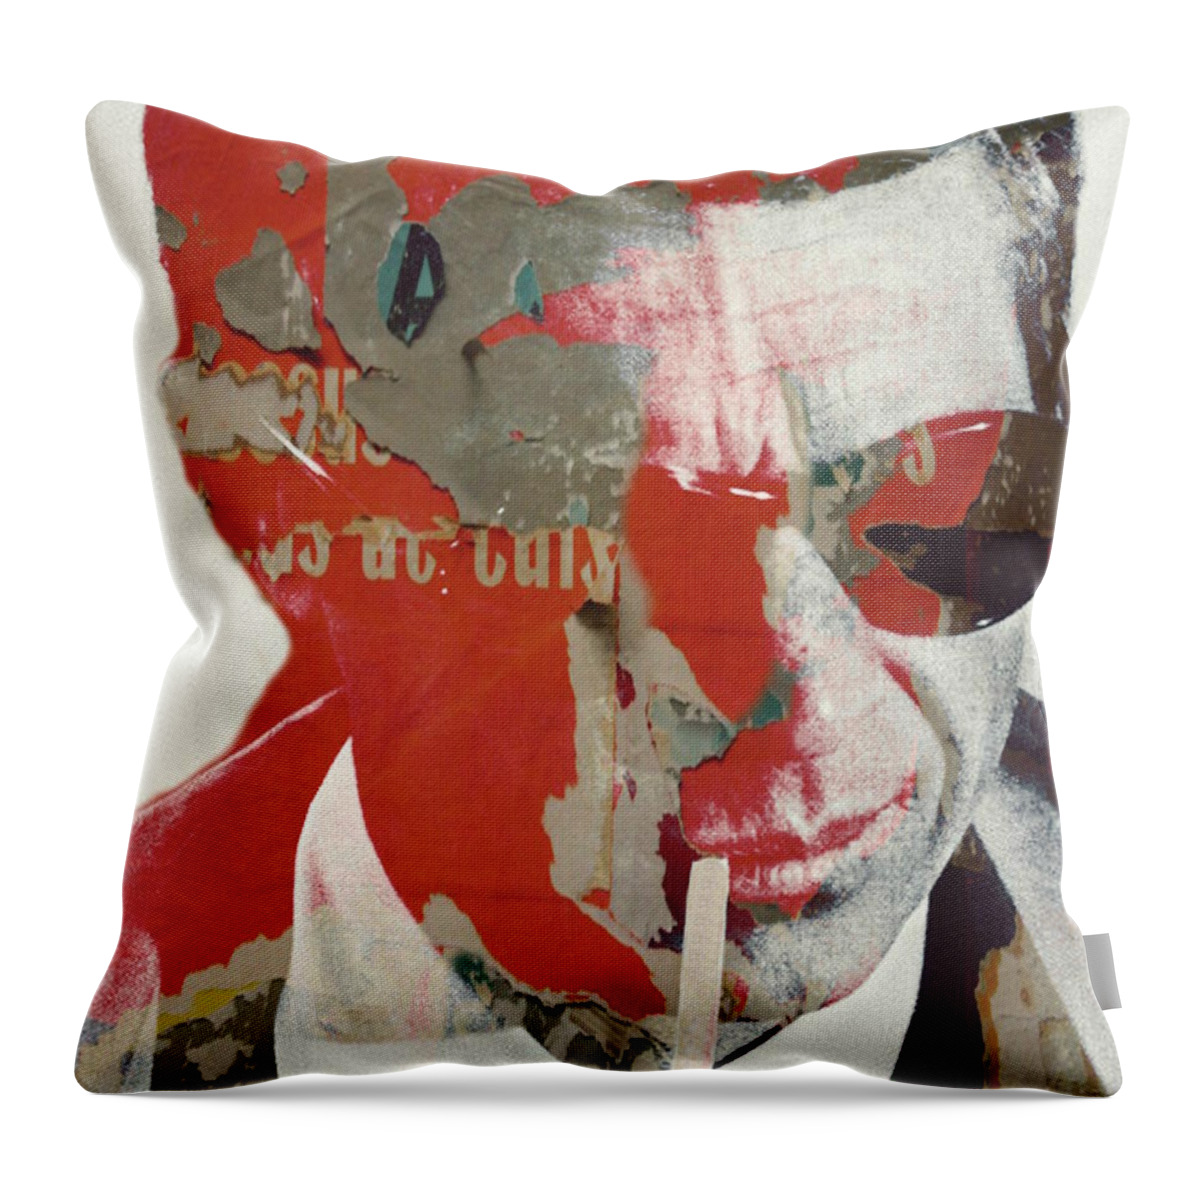 Steve Mcqueen Throw Pillow featuring the digital art Steve McQueen by Paul Lovering